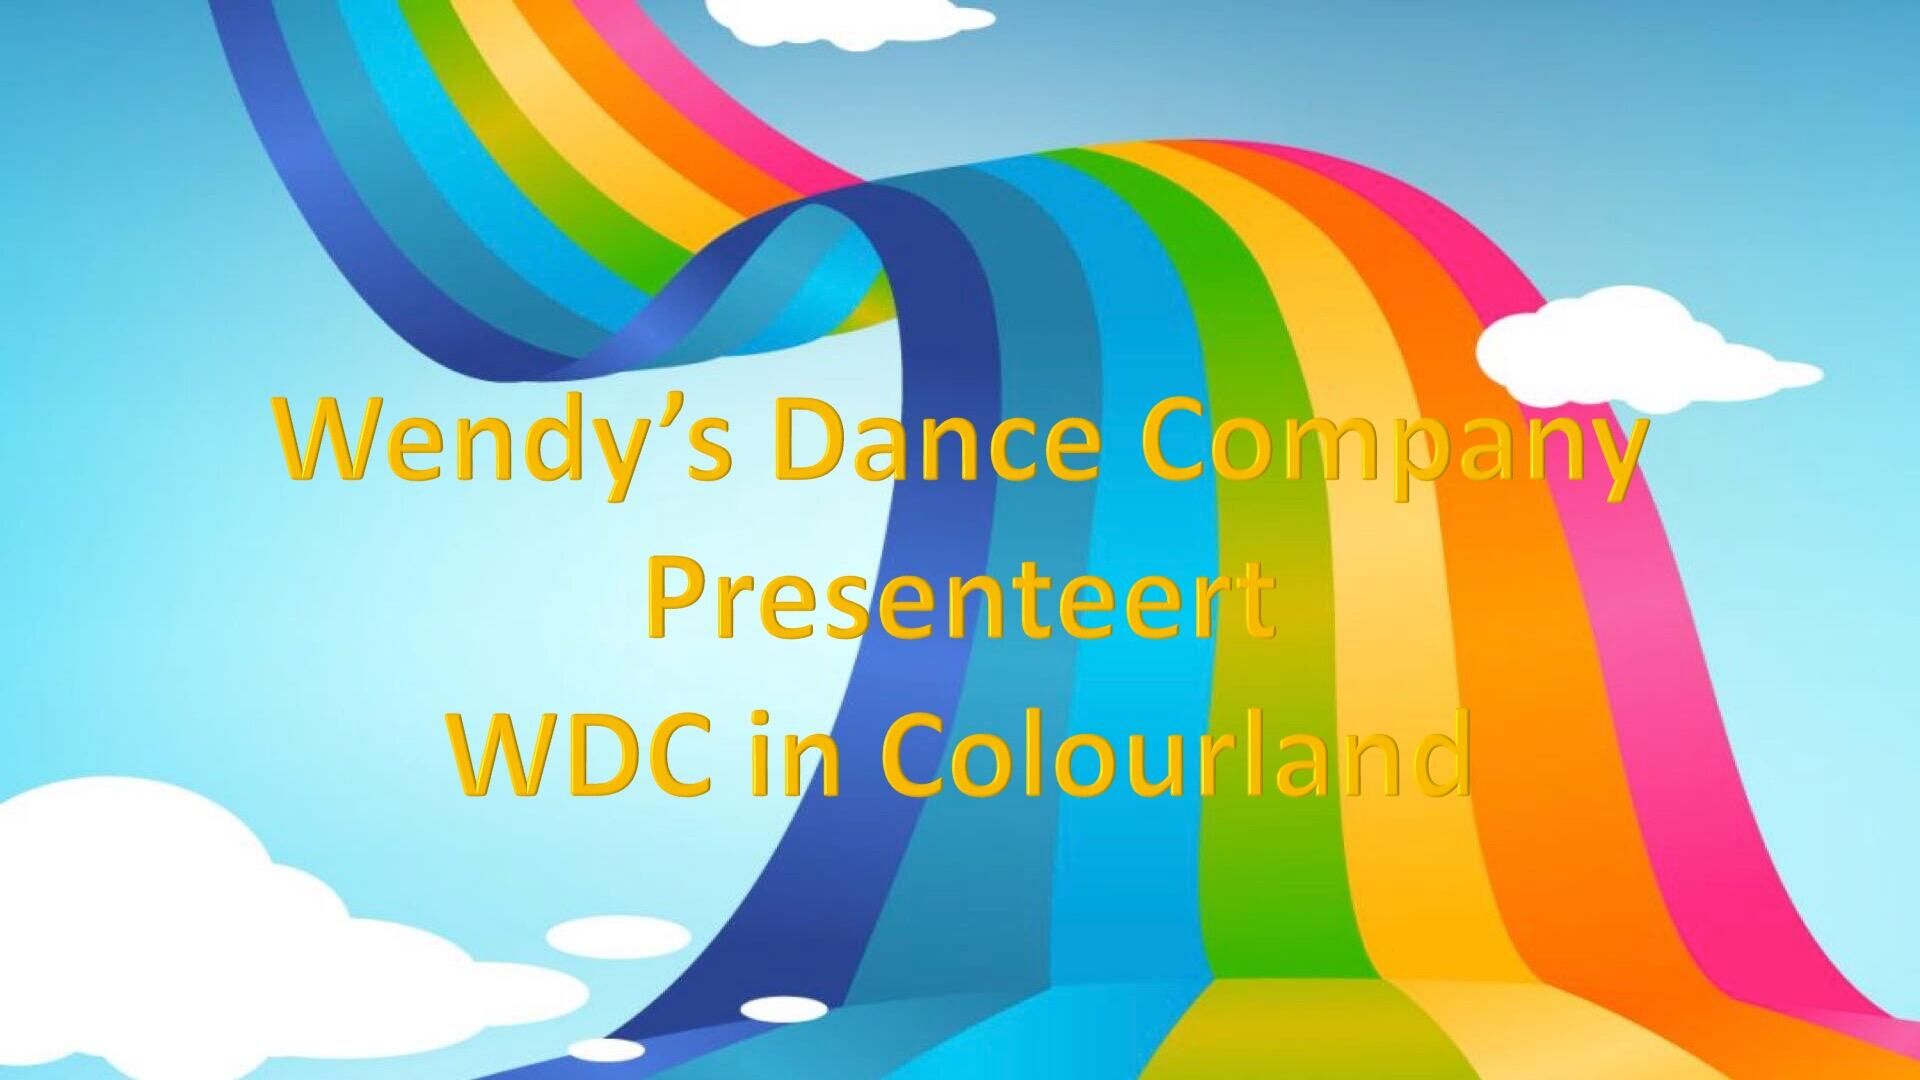 Wendy's Dance Company